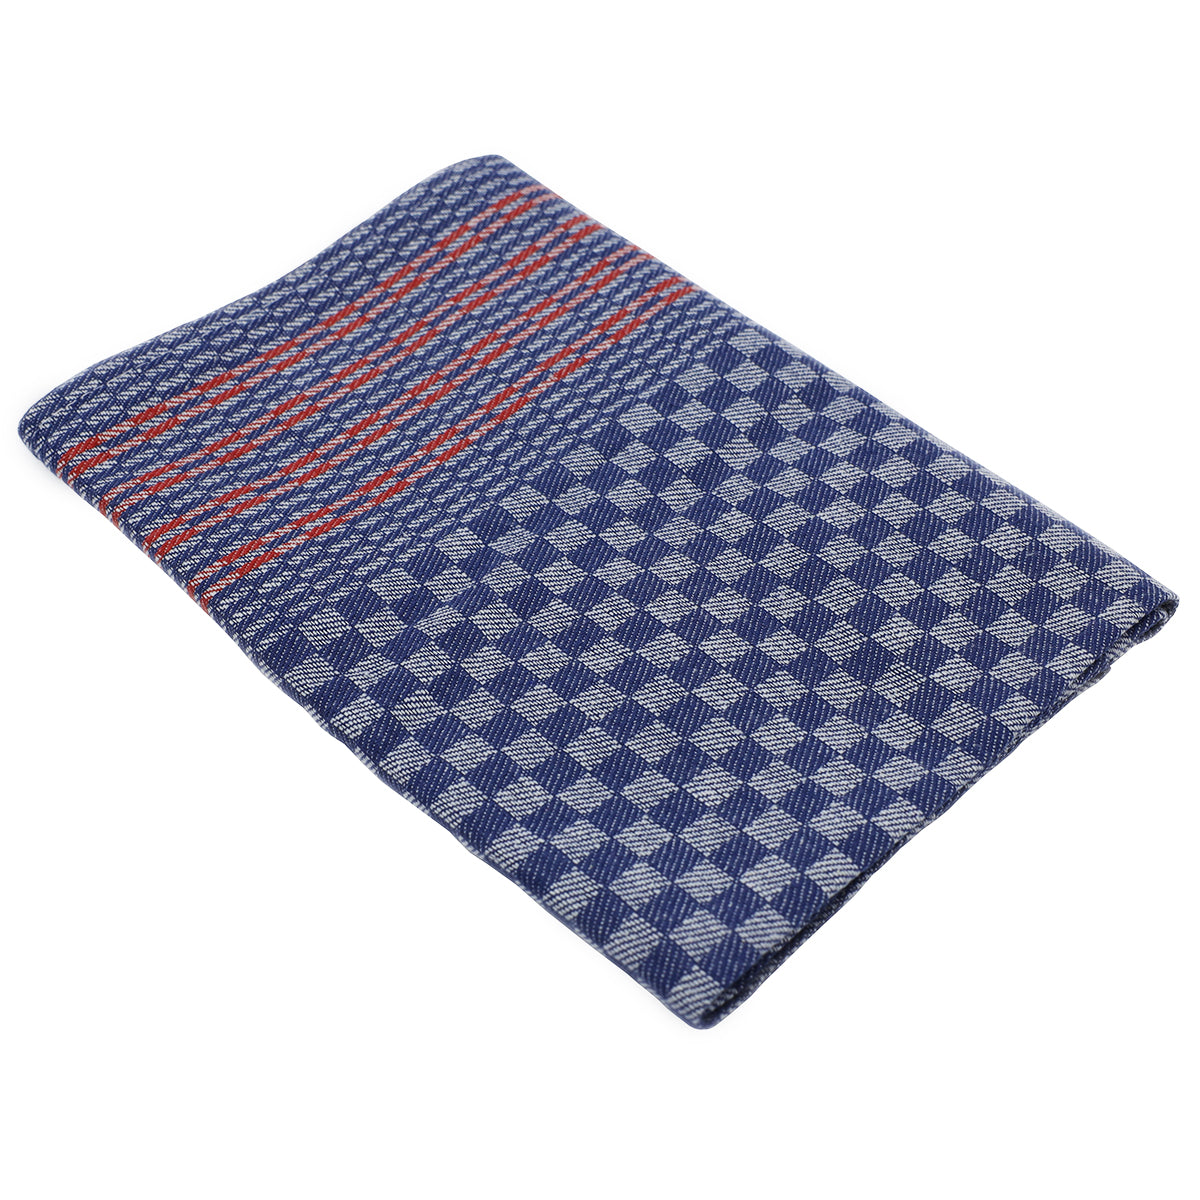 (150 stk) Håndklæde i halvlinned - 50 x 100 cm - blåternet med røde striber